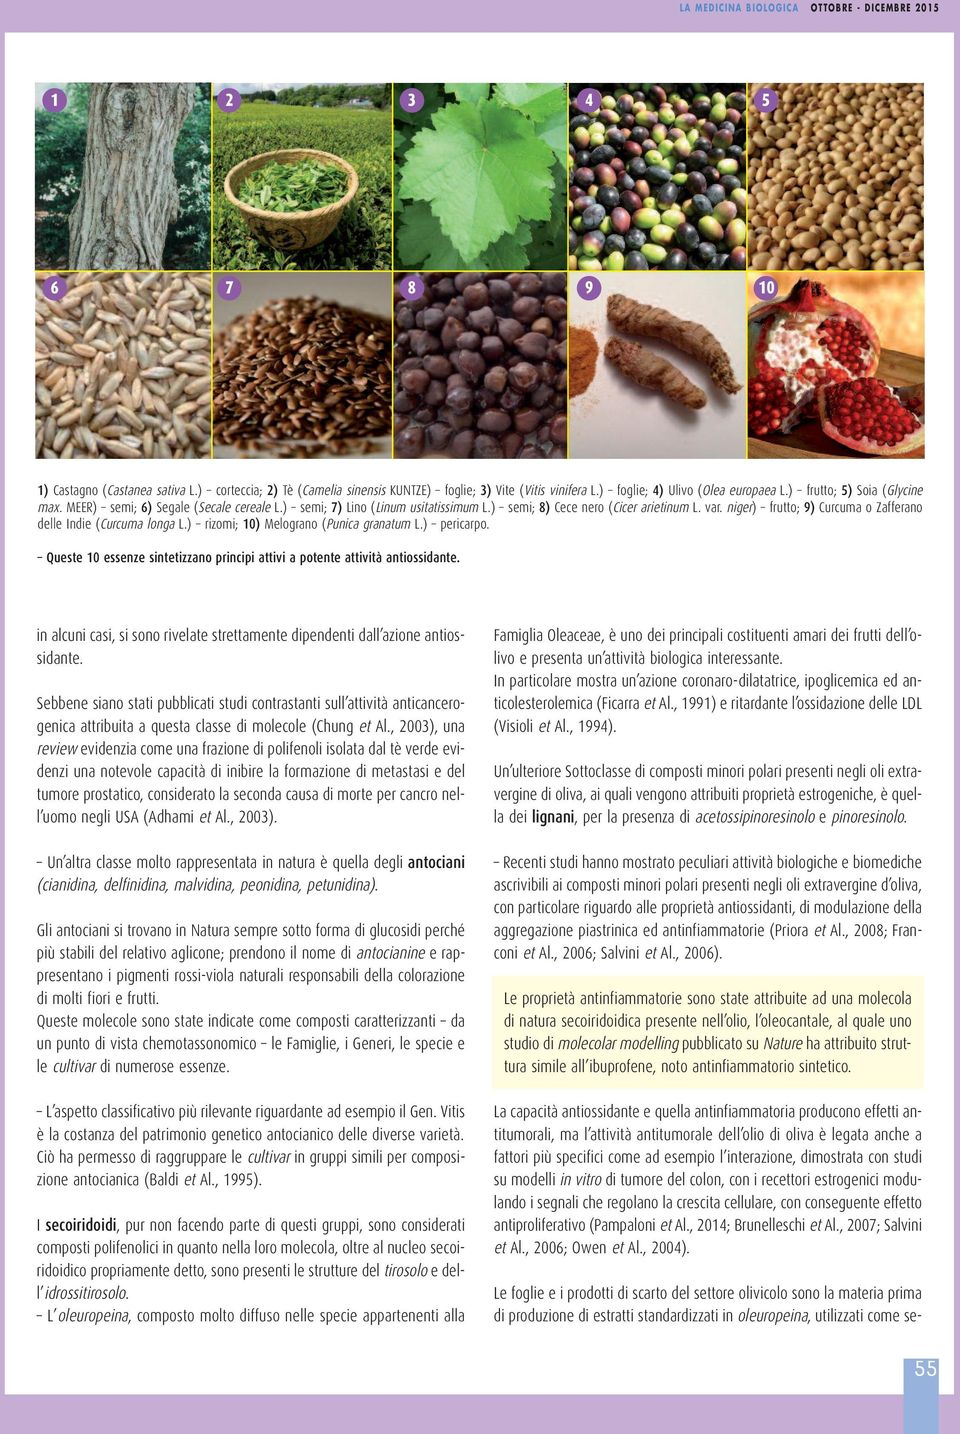 ) rizomi; 10) Melograno (Punica granatum L.) pericarpo. Queste 10 essenze sintetizzano principi attivi a potente attività antiossidante.